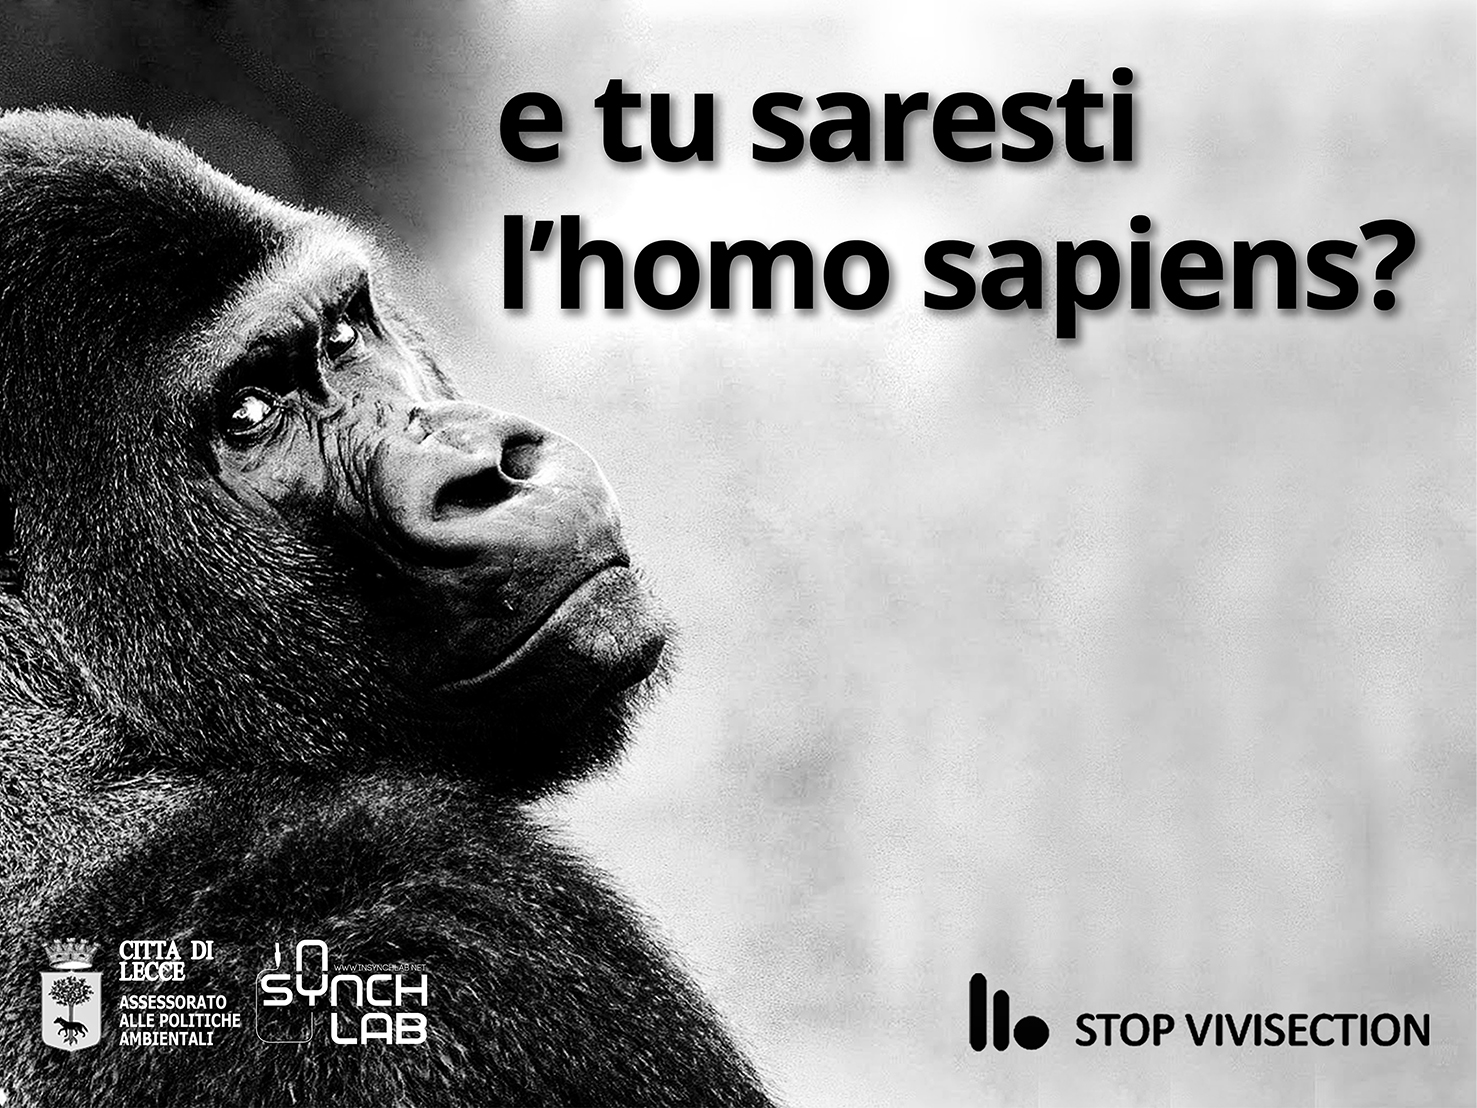 Stop vivisezione